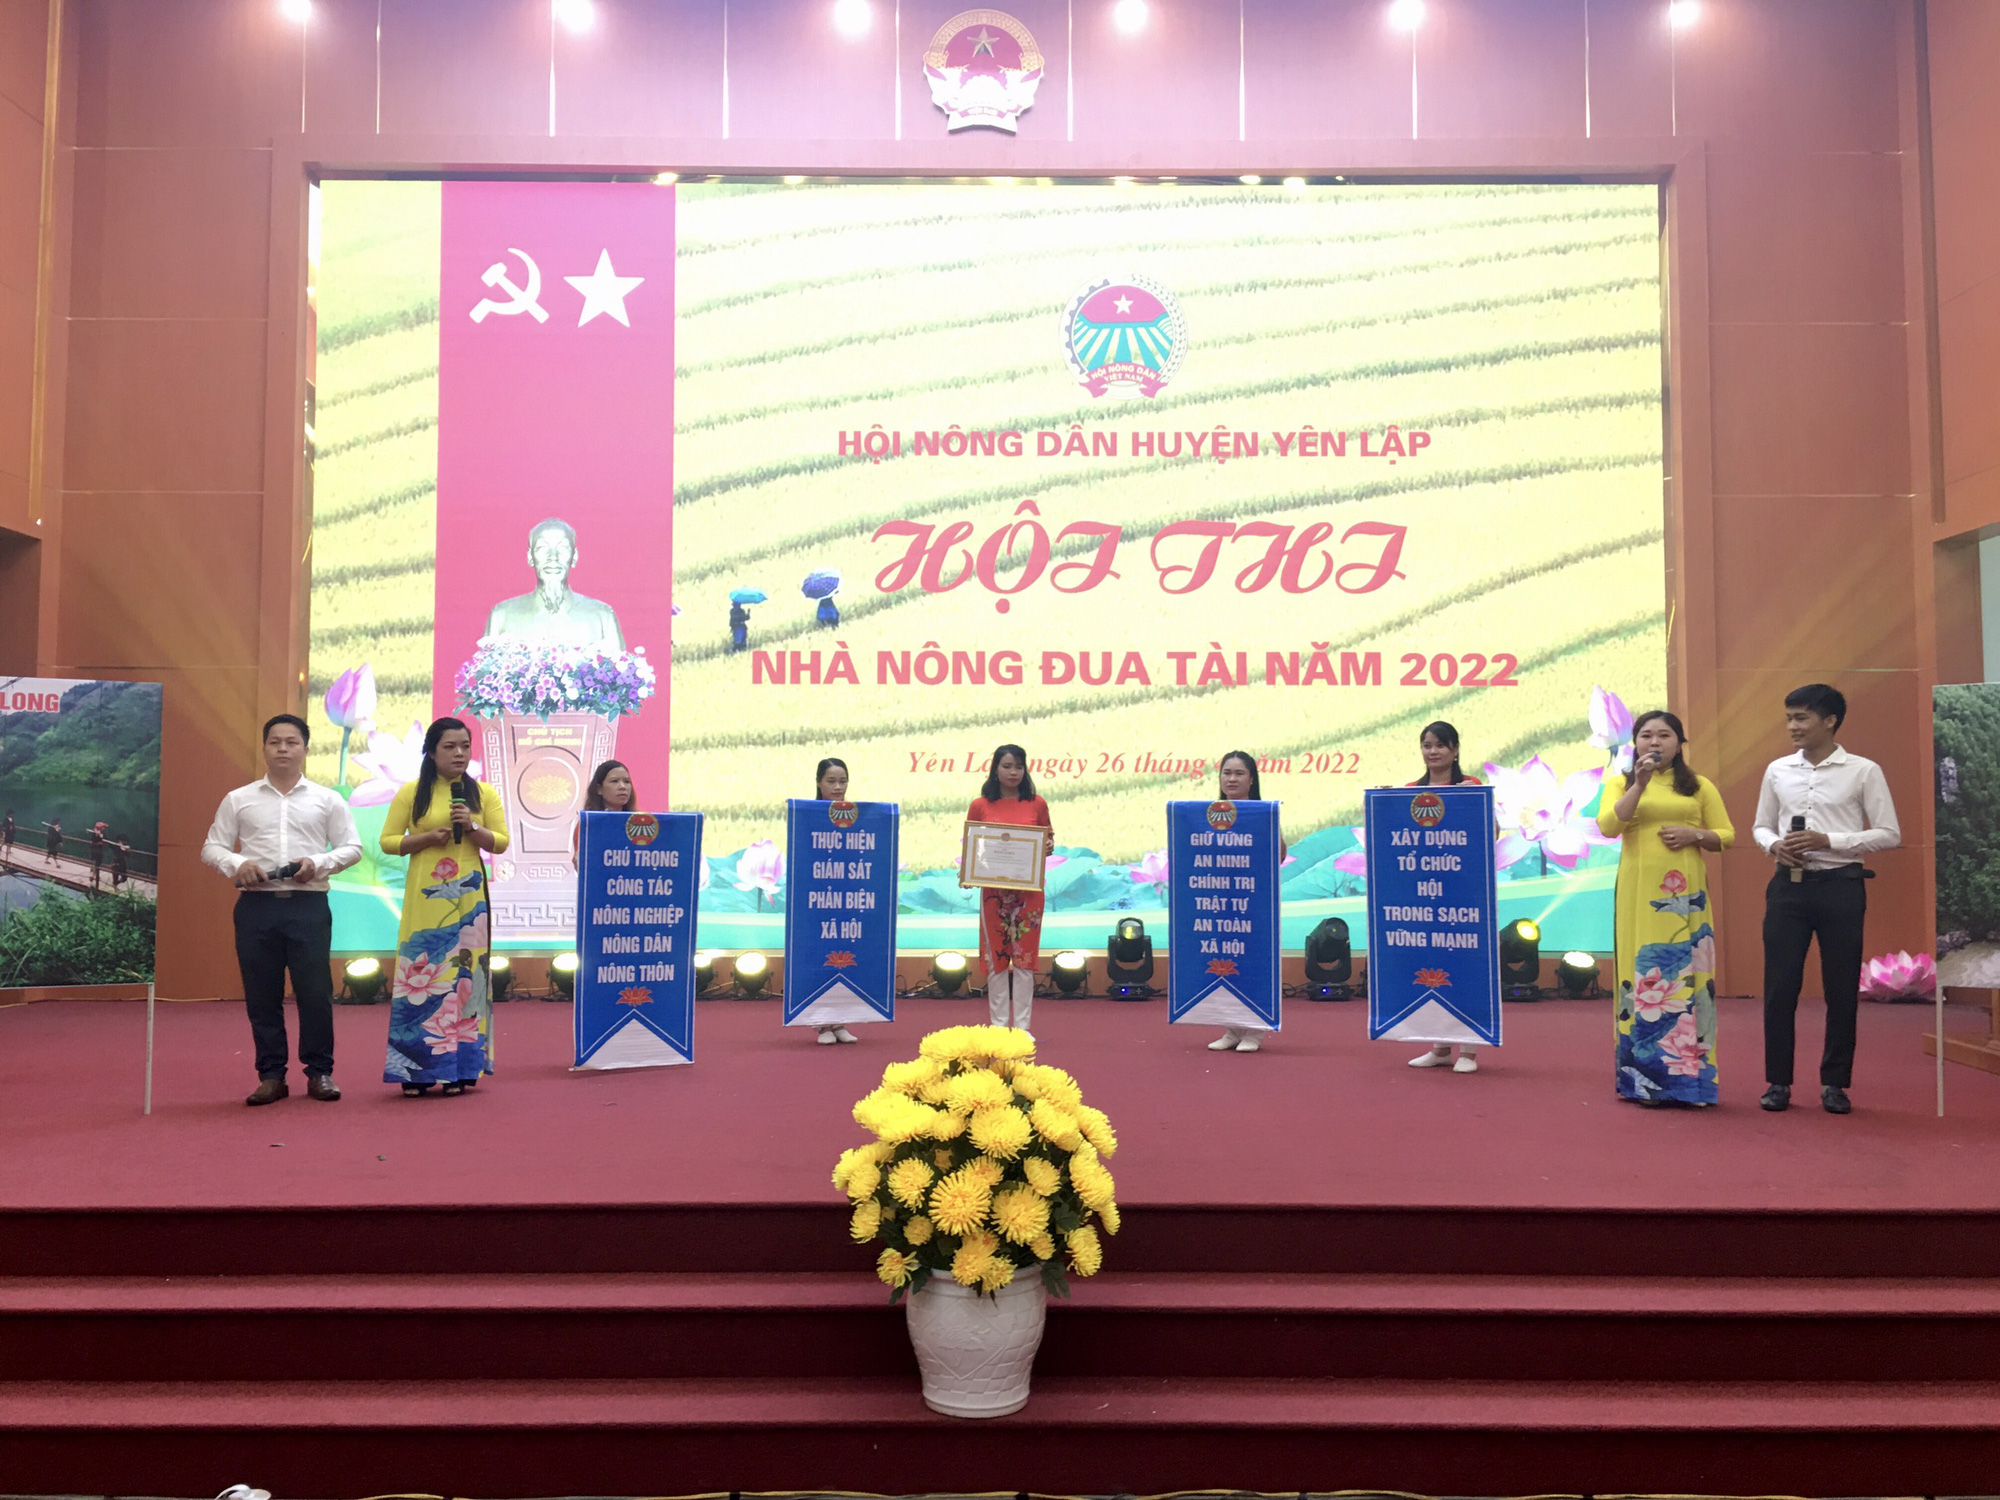 Phú Thọ: Hội Nông dân huyện Yên Lập tổ chức Hội thi “Nhà Nông đua tài năm 2022” - Ảnh 1.